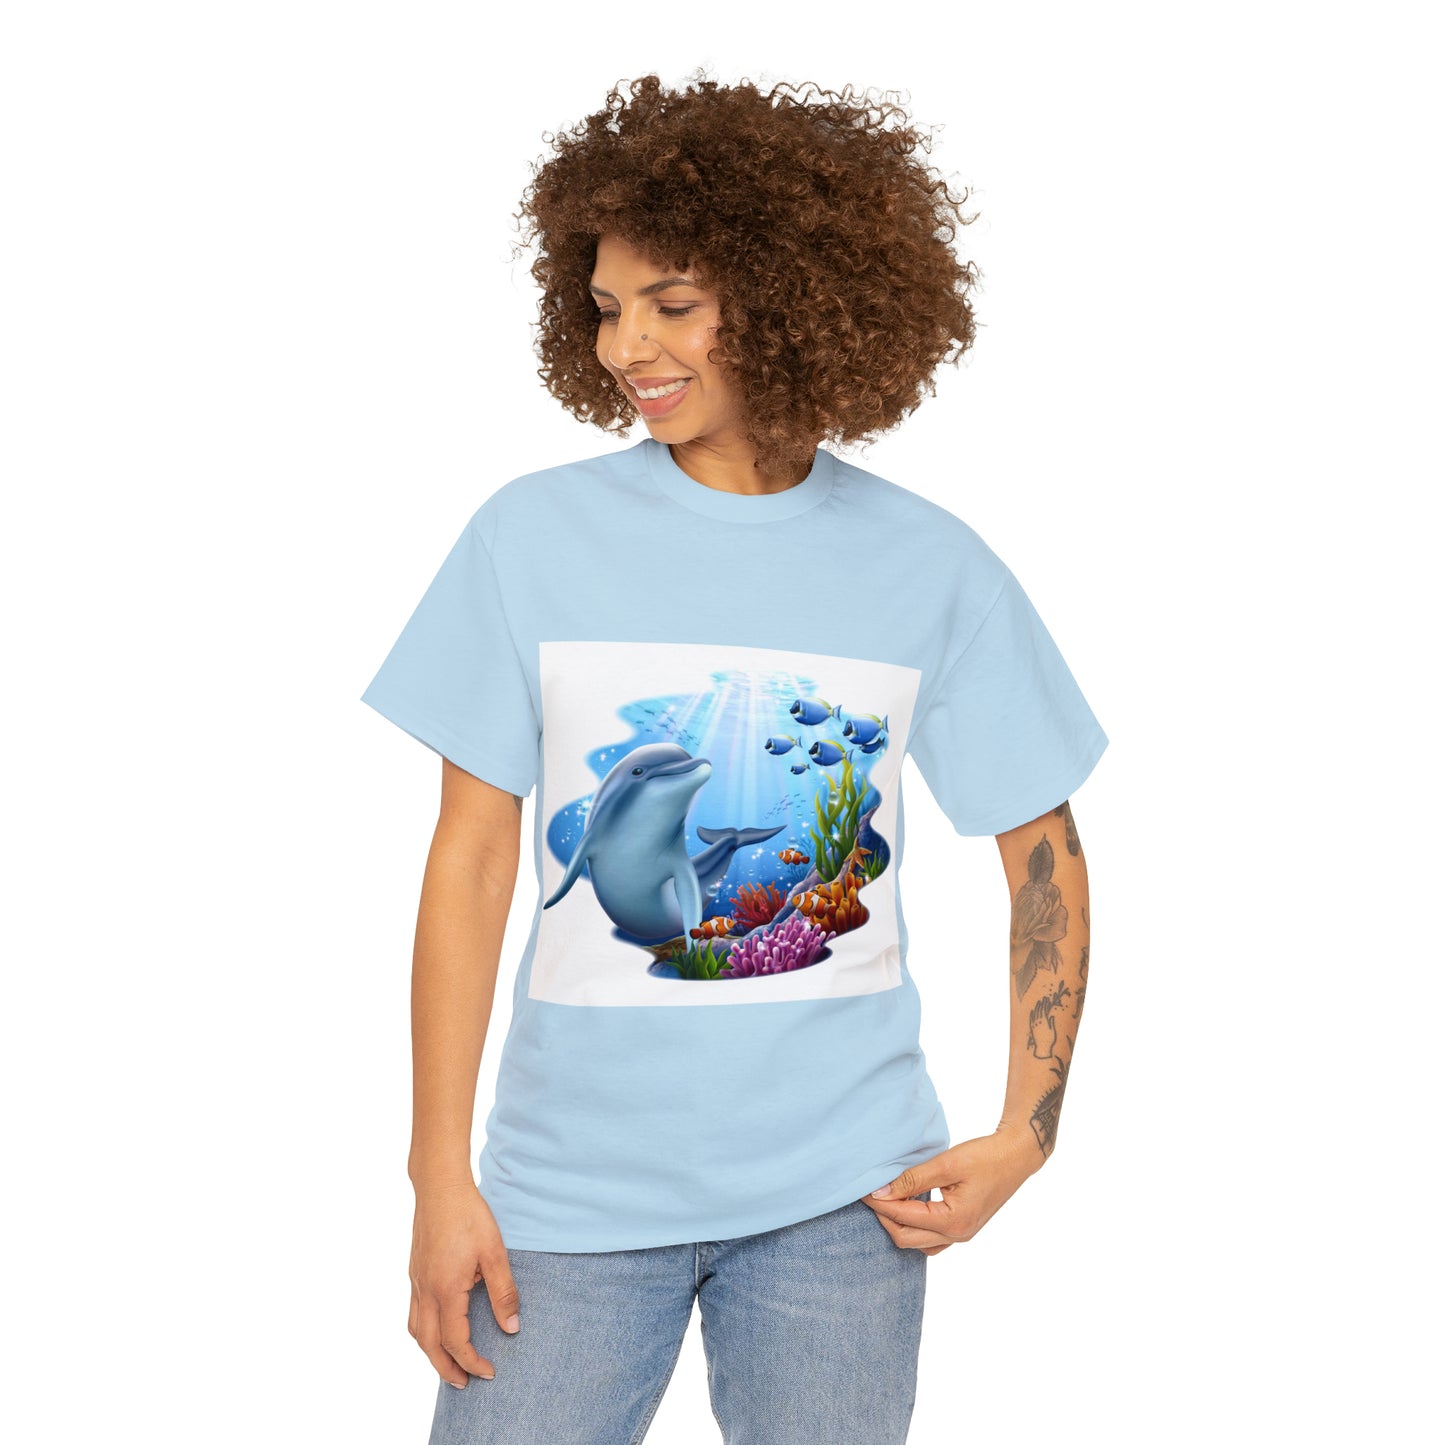 Underwater happy Dolphin - Unisex Heavy Cotton Tee